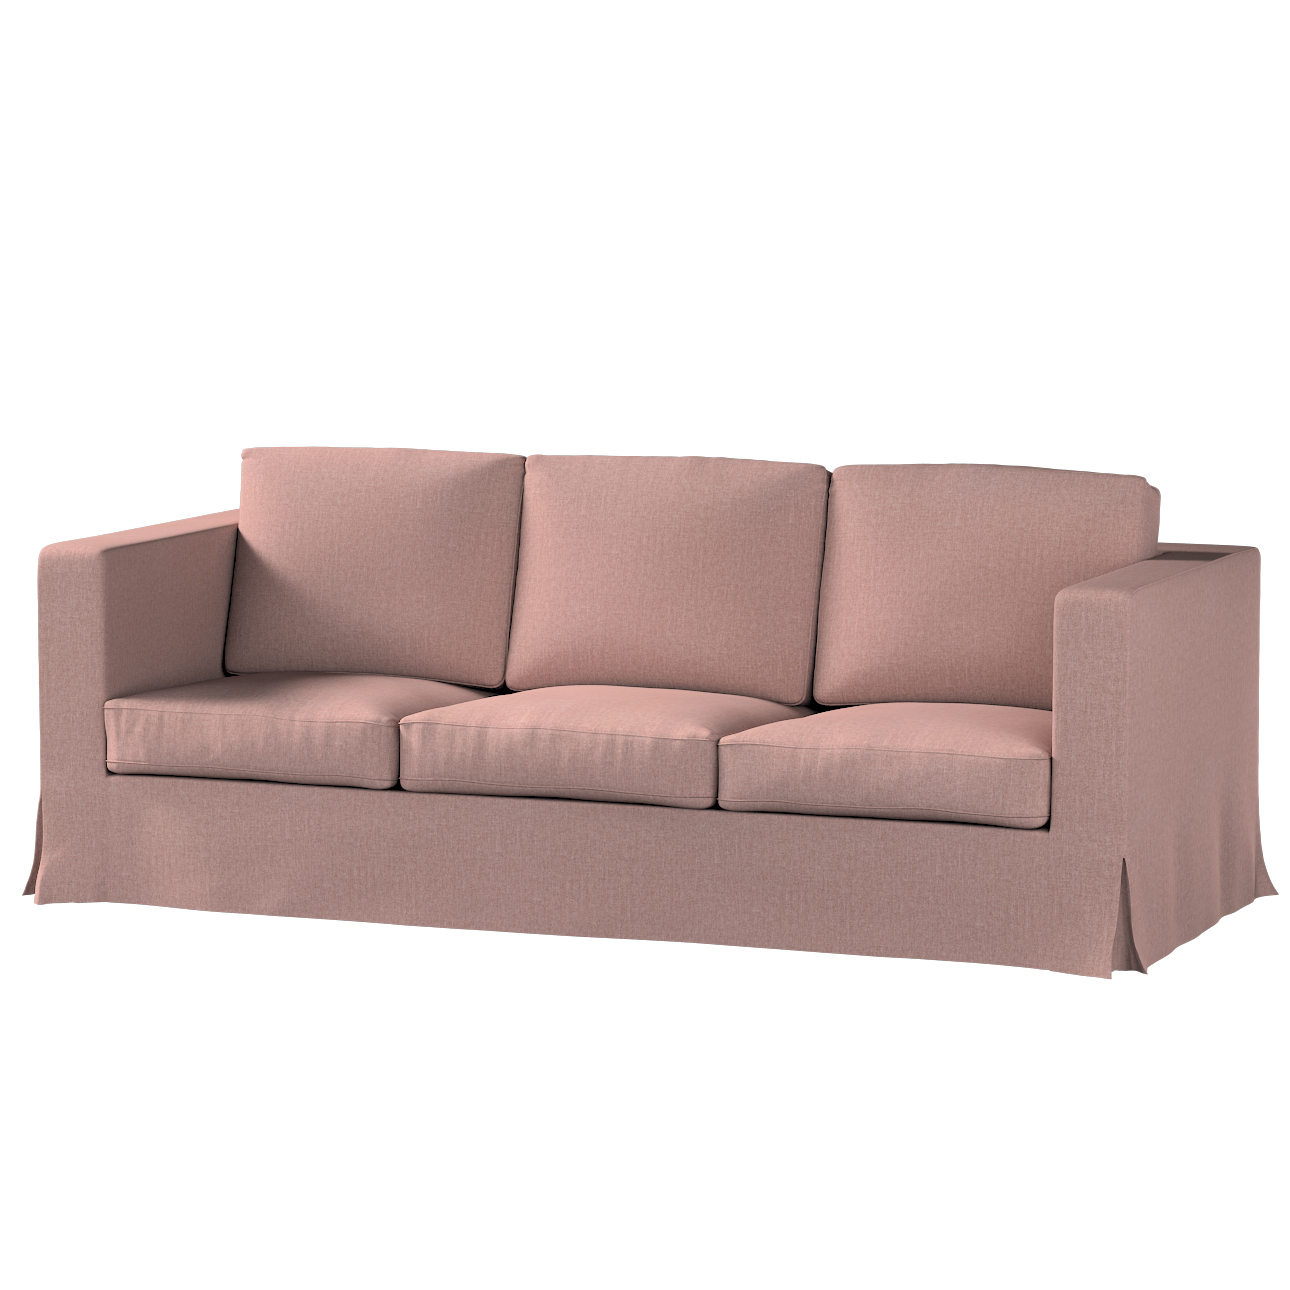 Bezug für Karlanda 3-Sitzer Sofa nicht ausklappbar, lang, altrosa, Bezug fü günstig online kaufen